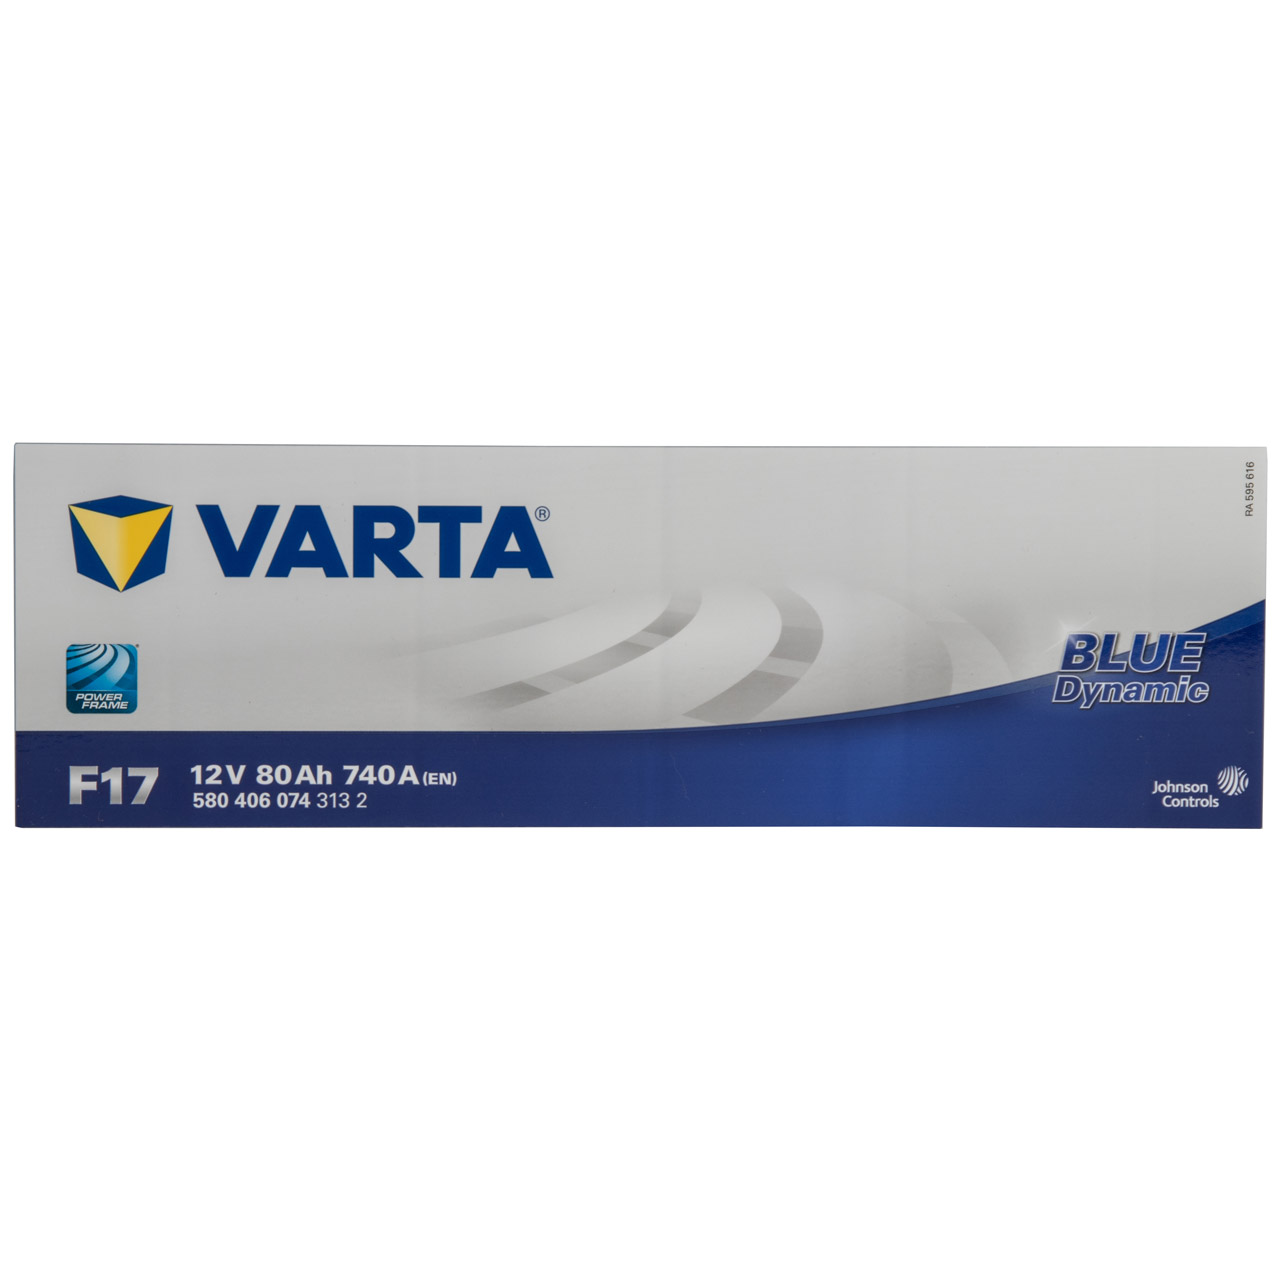 VARTA BLUE dynamic F17 Autobatterie Batterie Starterbatterie 12V